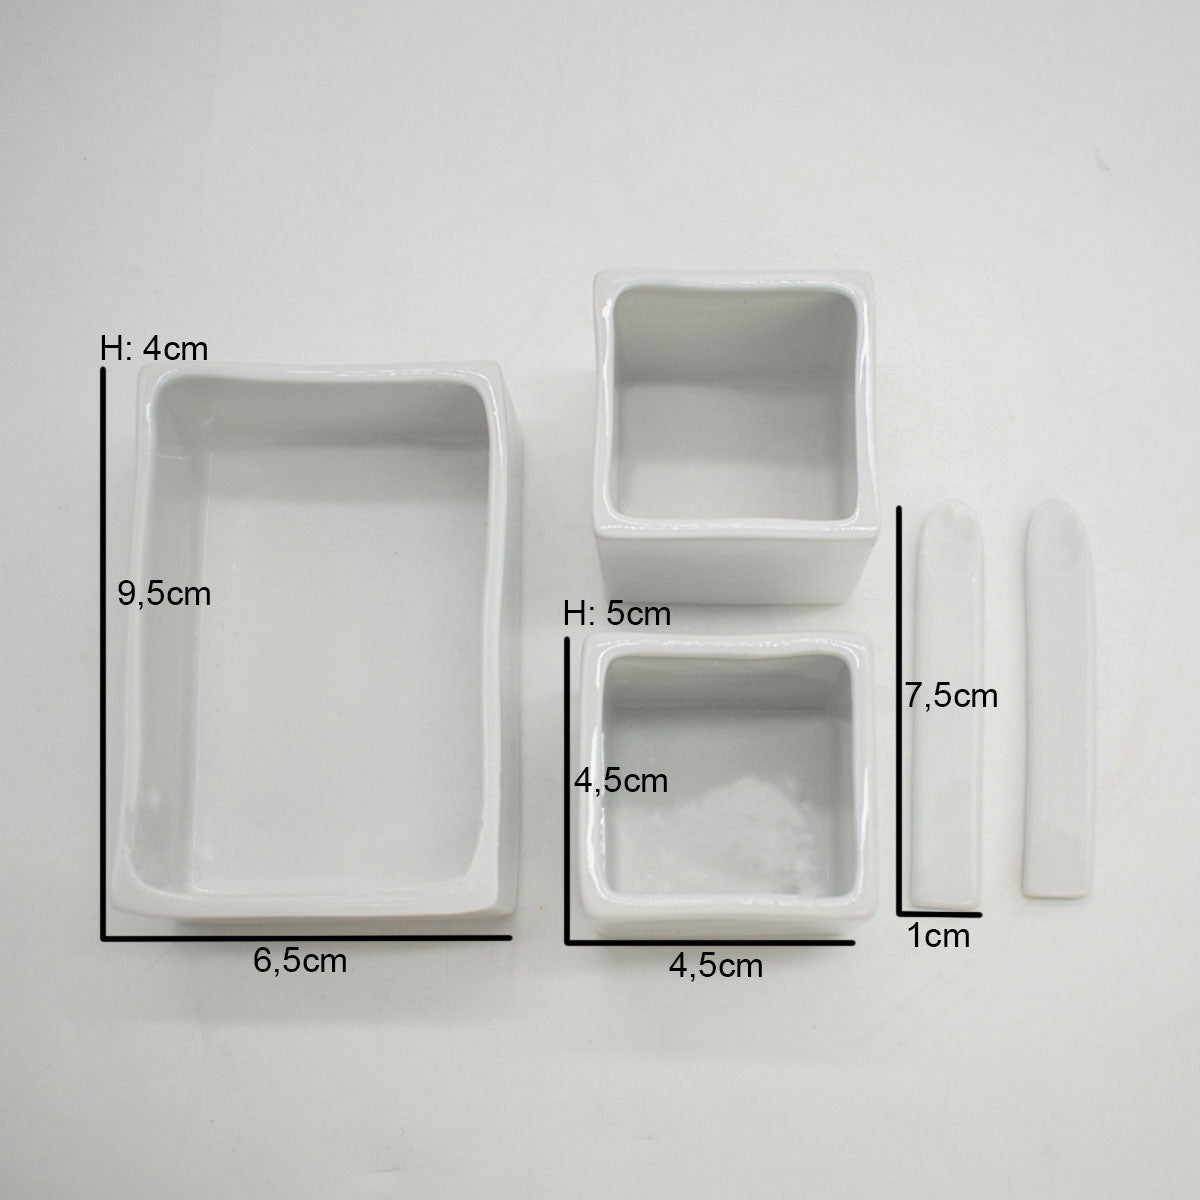 Porzellanschalen Set mit Tableau aus Eiche in verschiedenen Farbtönen für den Tisch | 3 x Gefäße, 2 x Löffel, 1 x Tuch und 1 x Tableau